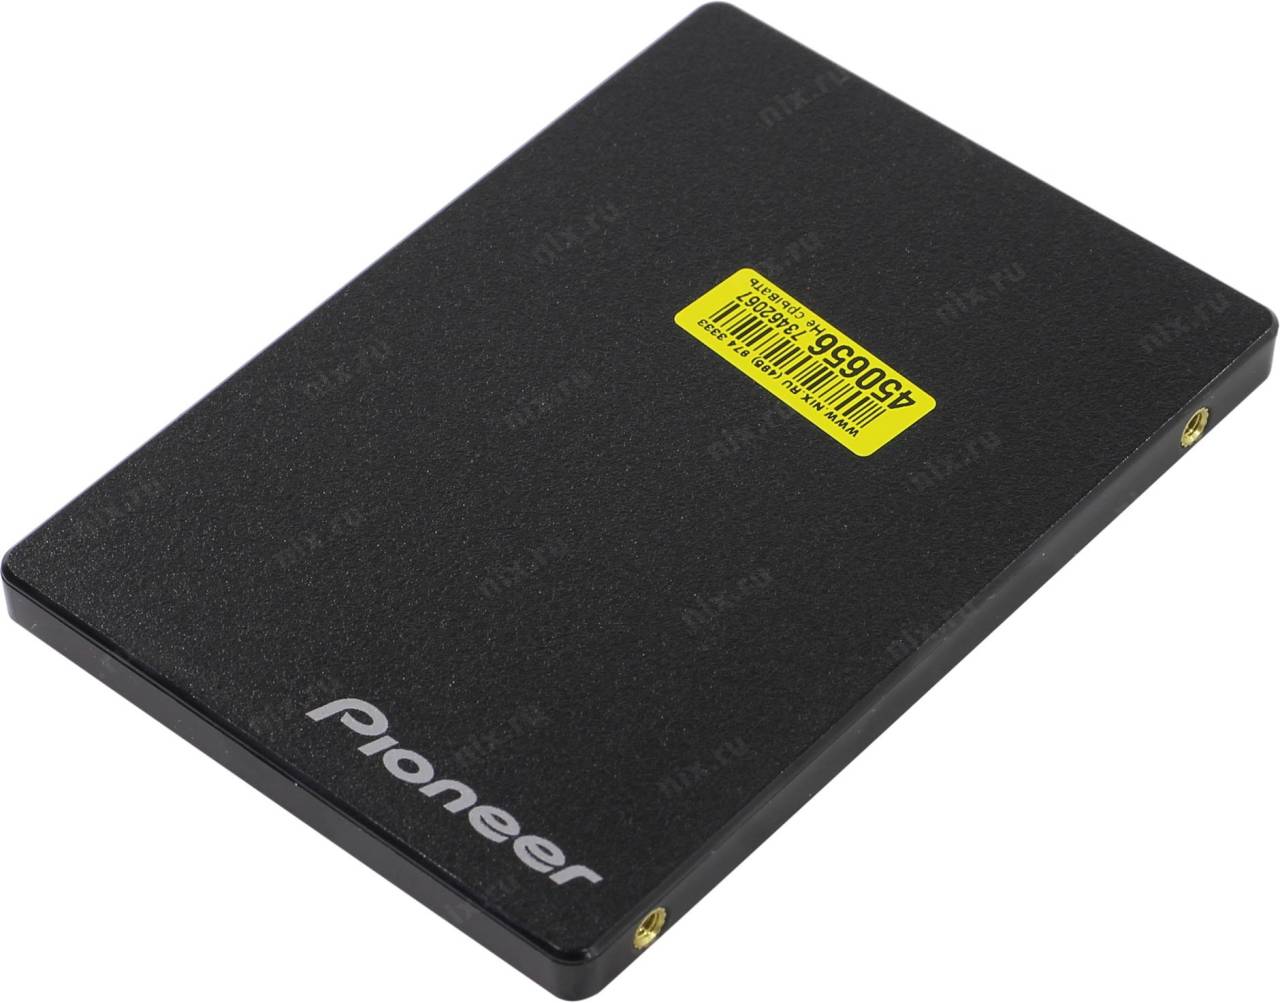   SSD 512 Gb SATA-III Pioneer [APS-SL3N-512] 2.5 3D TLC